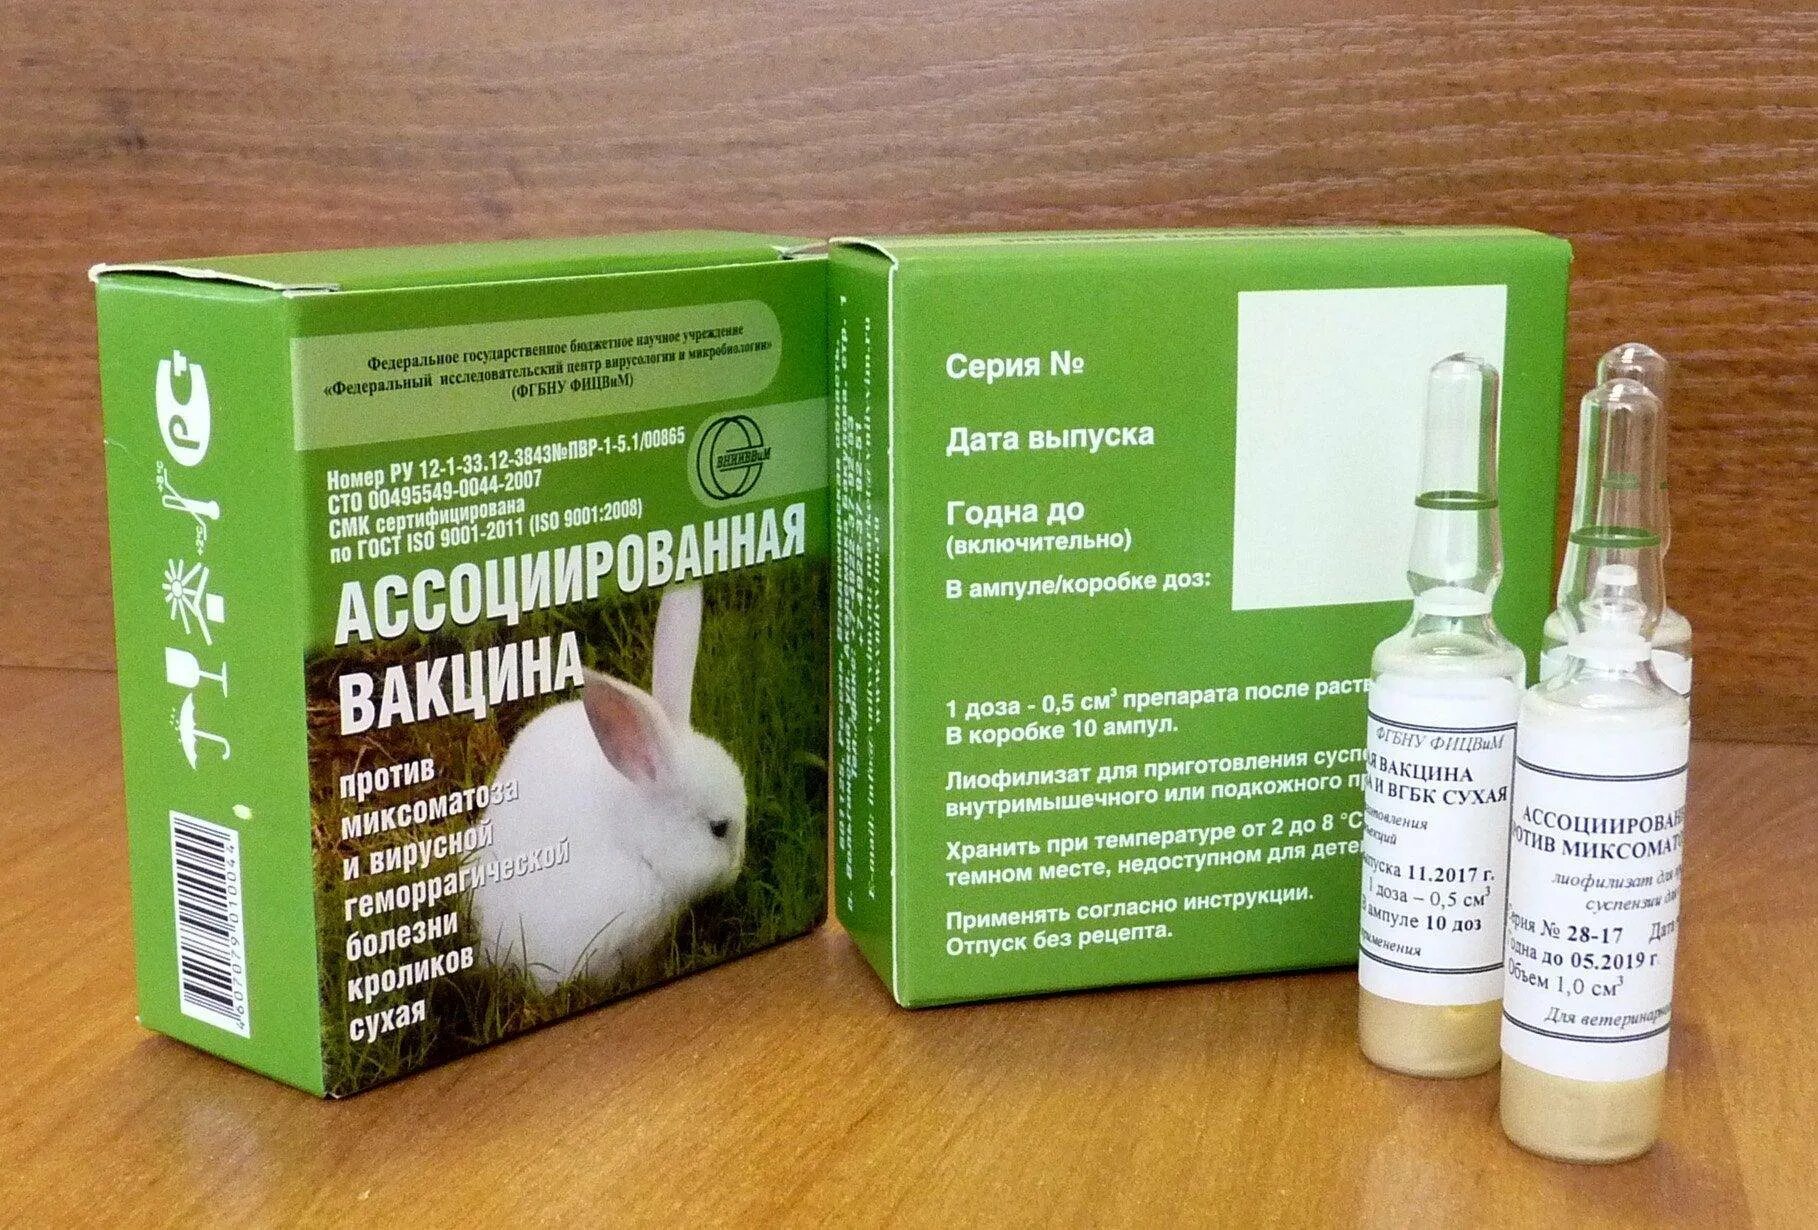 Вакцина кроликам от миксоматоза и вгбк. Вакцина ВГБК+миксоматоз ассоциированная сухая. Миксоматоз и ВГБК У кроликов вакцина. Вакцина ассоциированная для кроликов от миксоматоза и ВГБК. Вакцина для кроликов миксоматоза.